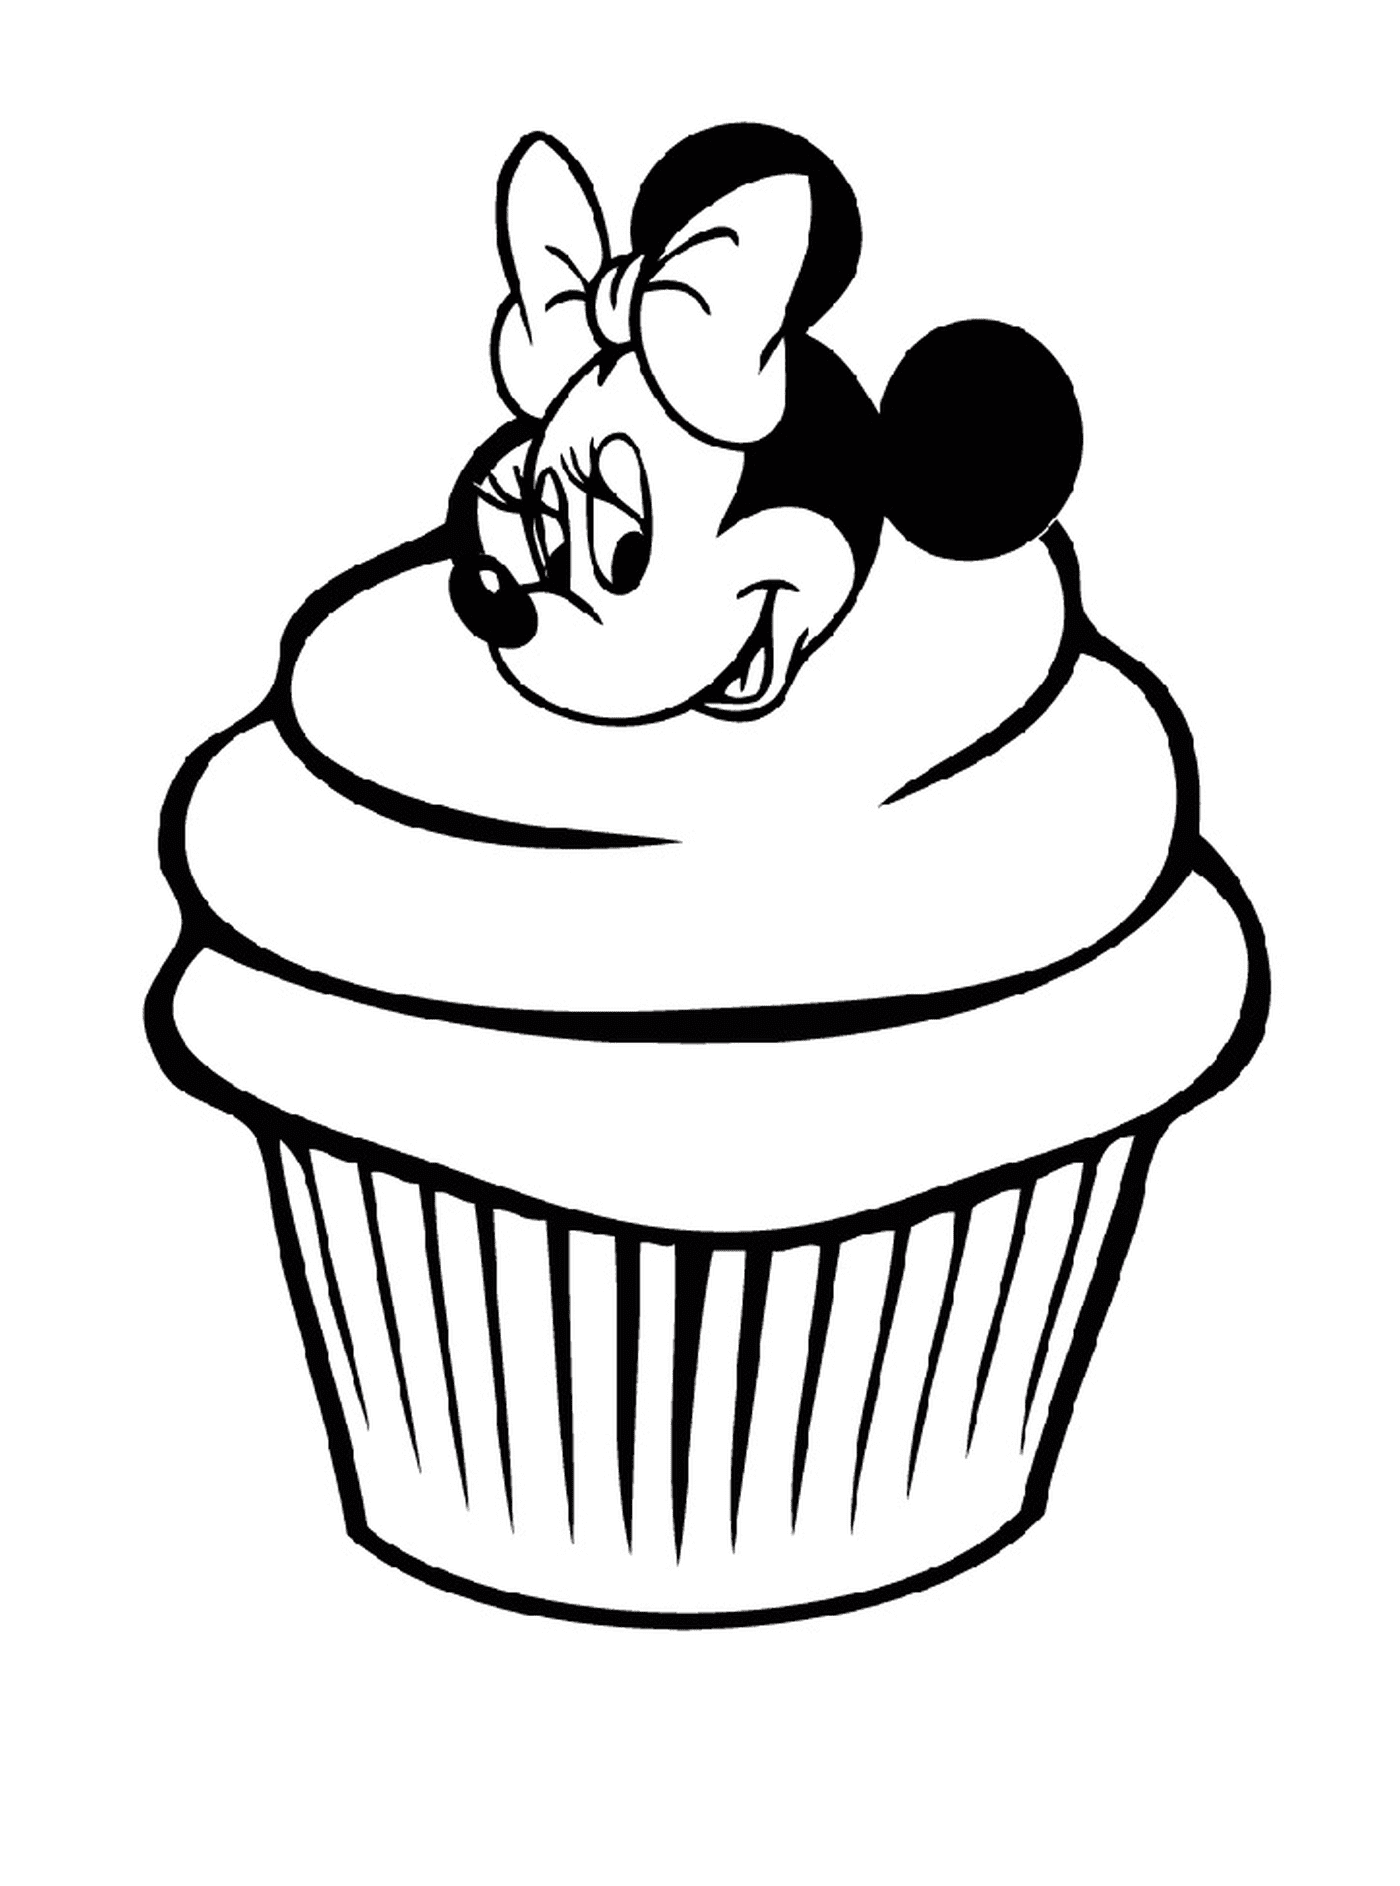  迪士尼的米尼老鼠蛋糕 